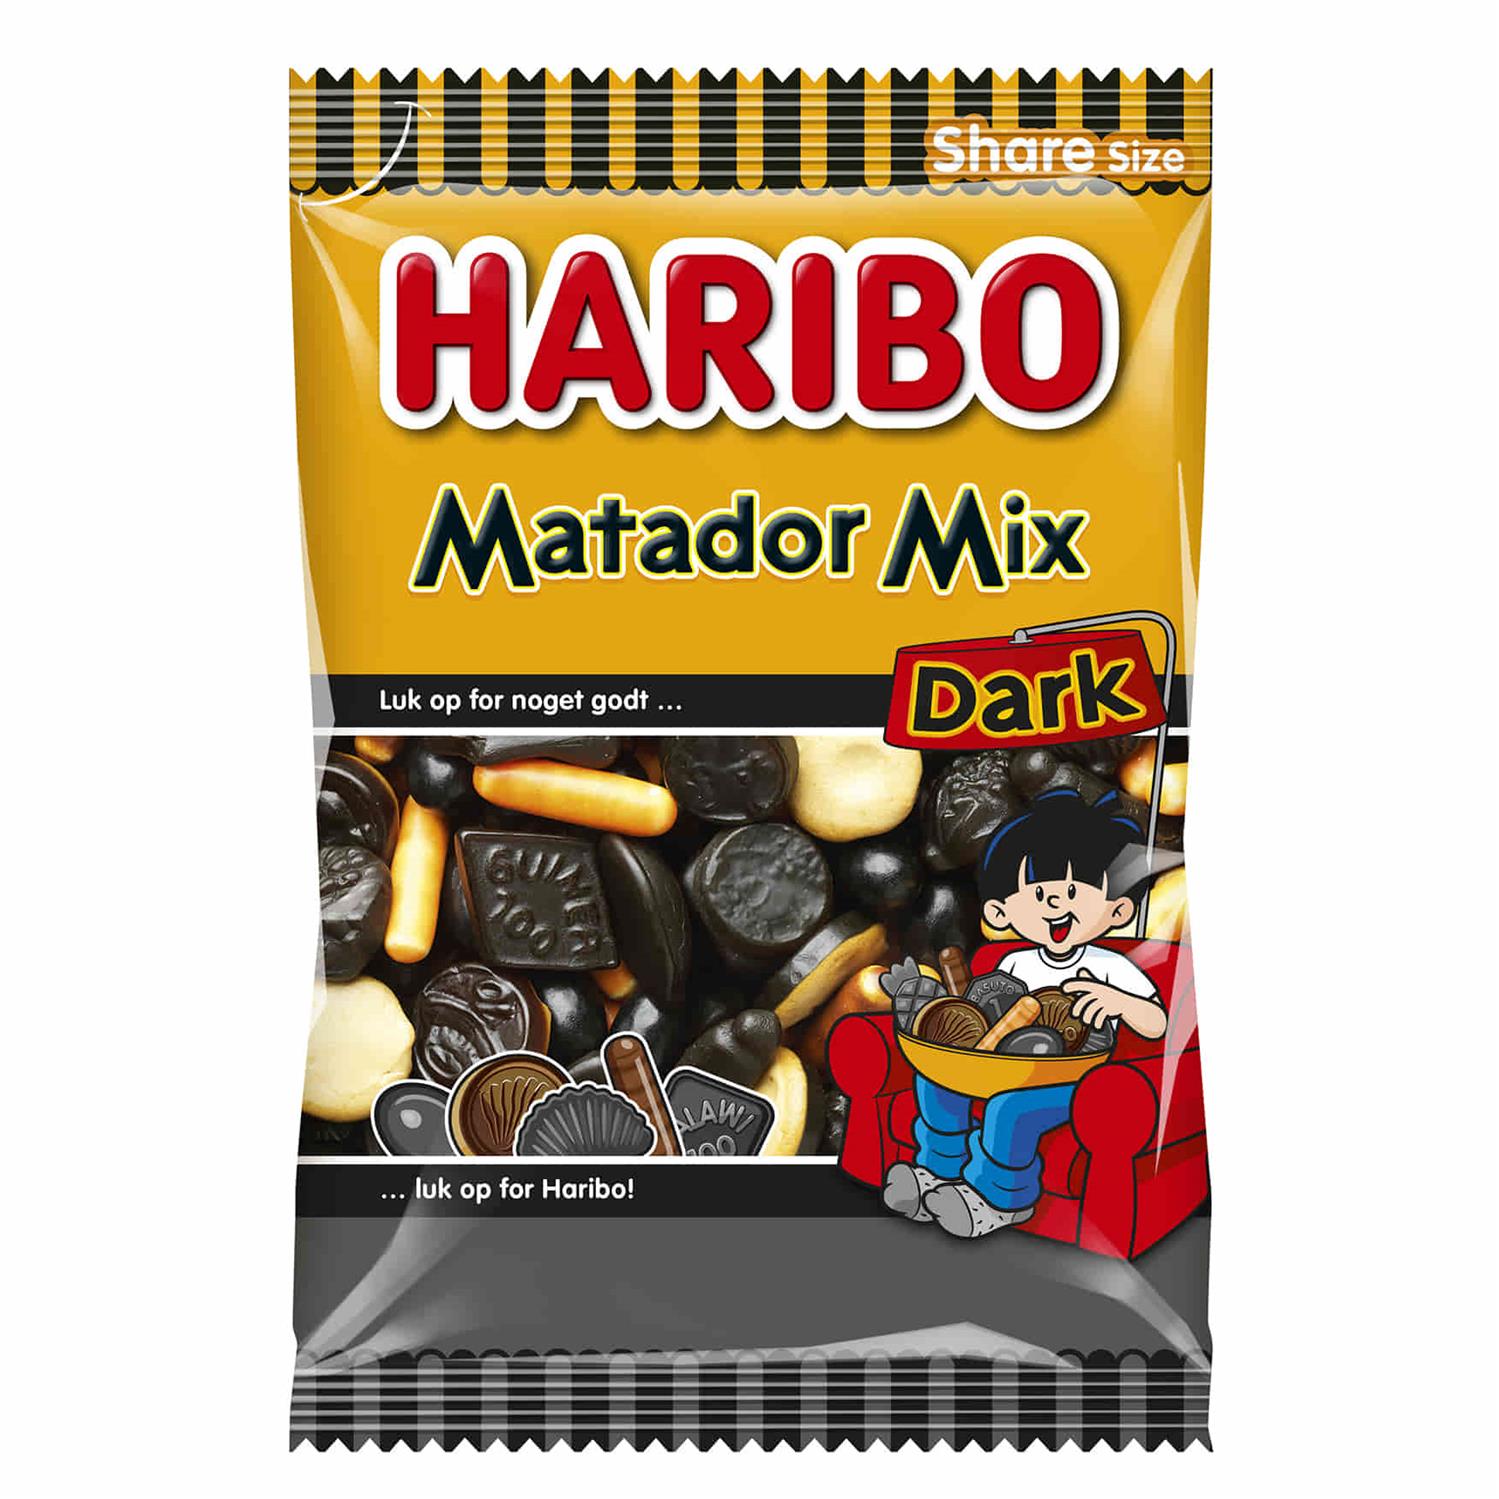 udtale vurdere Mellem Haribo Matador Mix Dark 350 g - Grænsehandel til billige priser